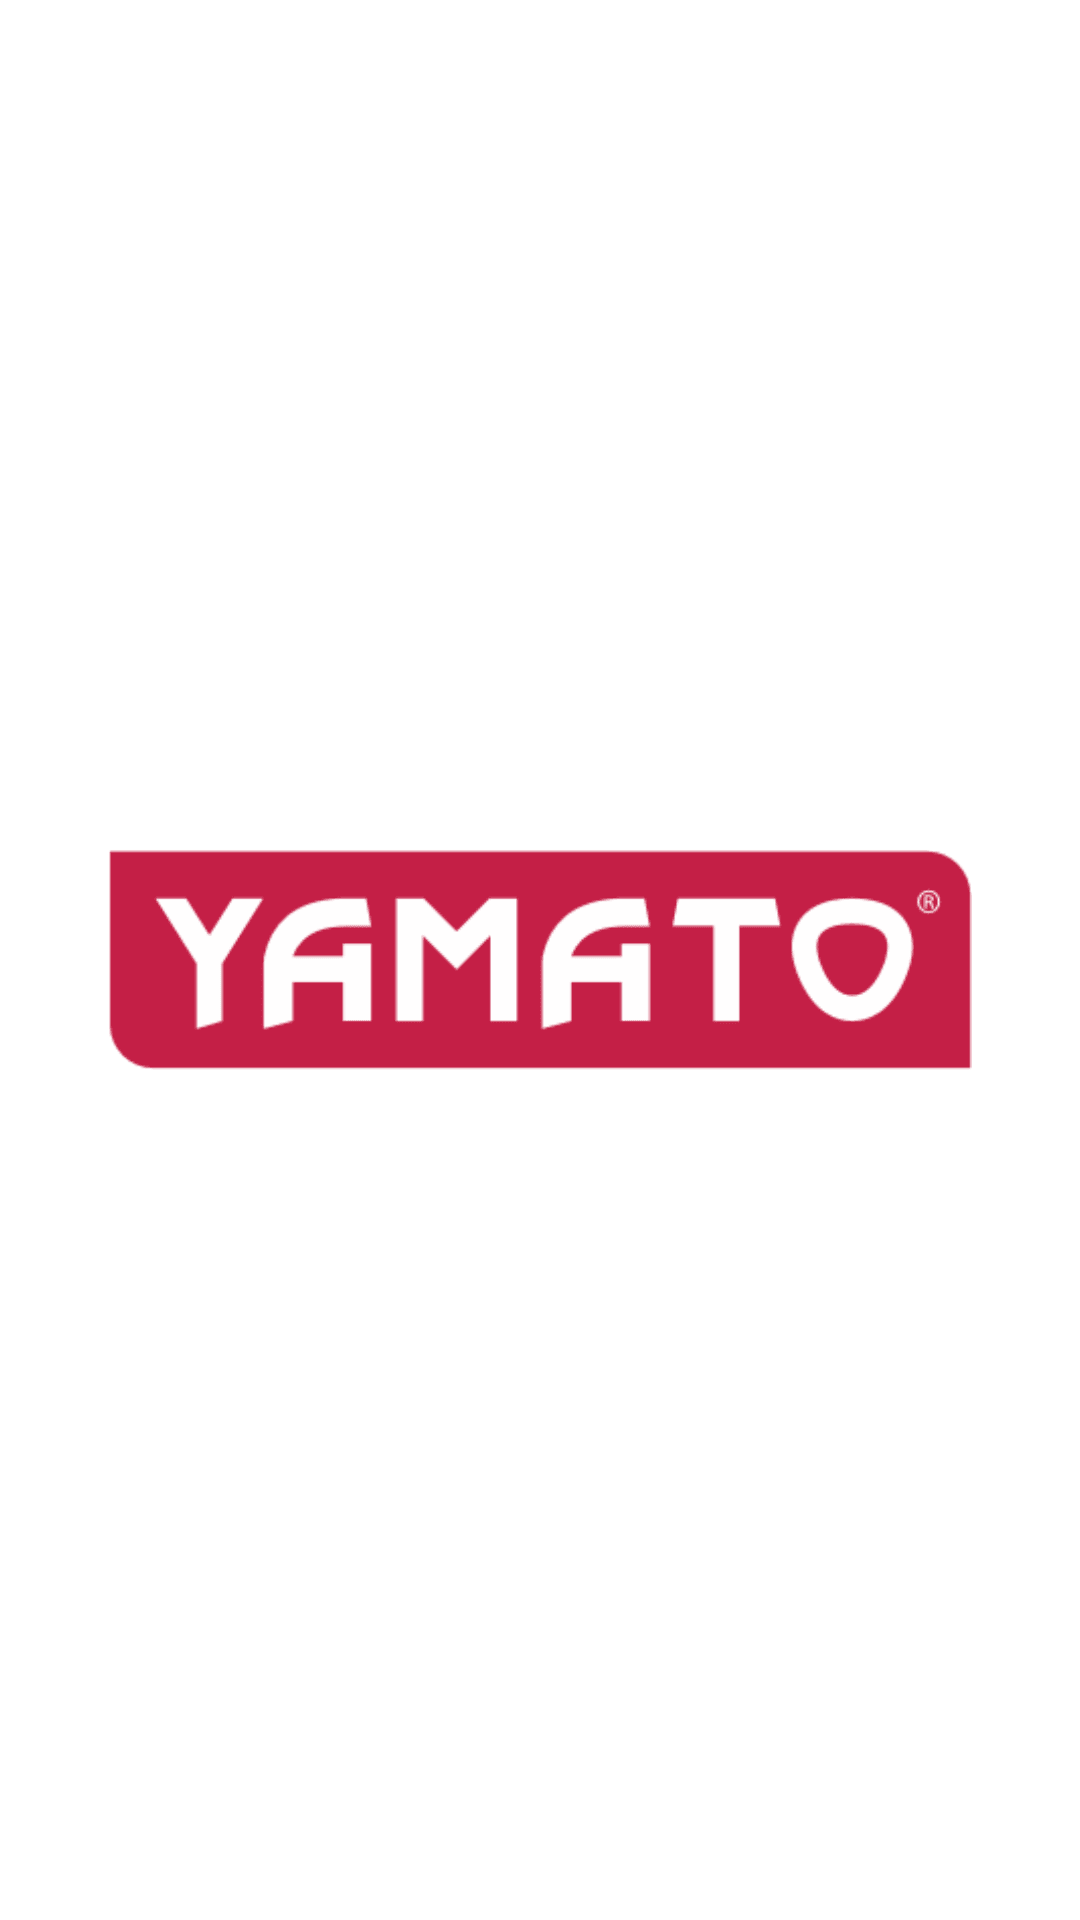 Yamato - Trapano a percussione elettrico 1050Watt mandrino ø mm.13 Yamato